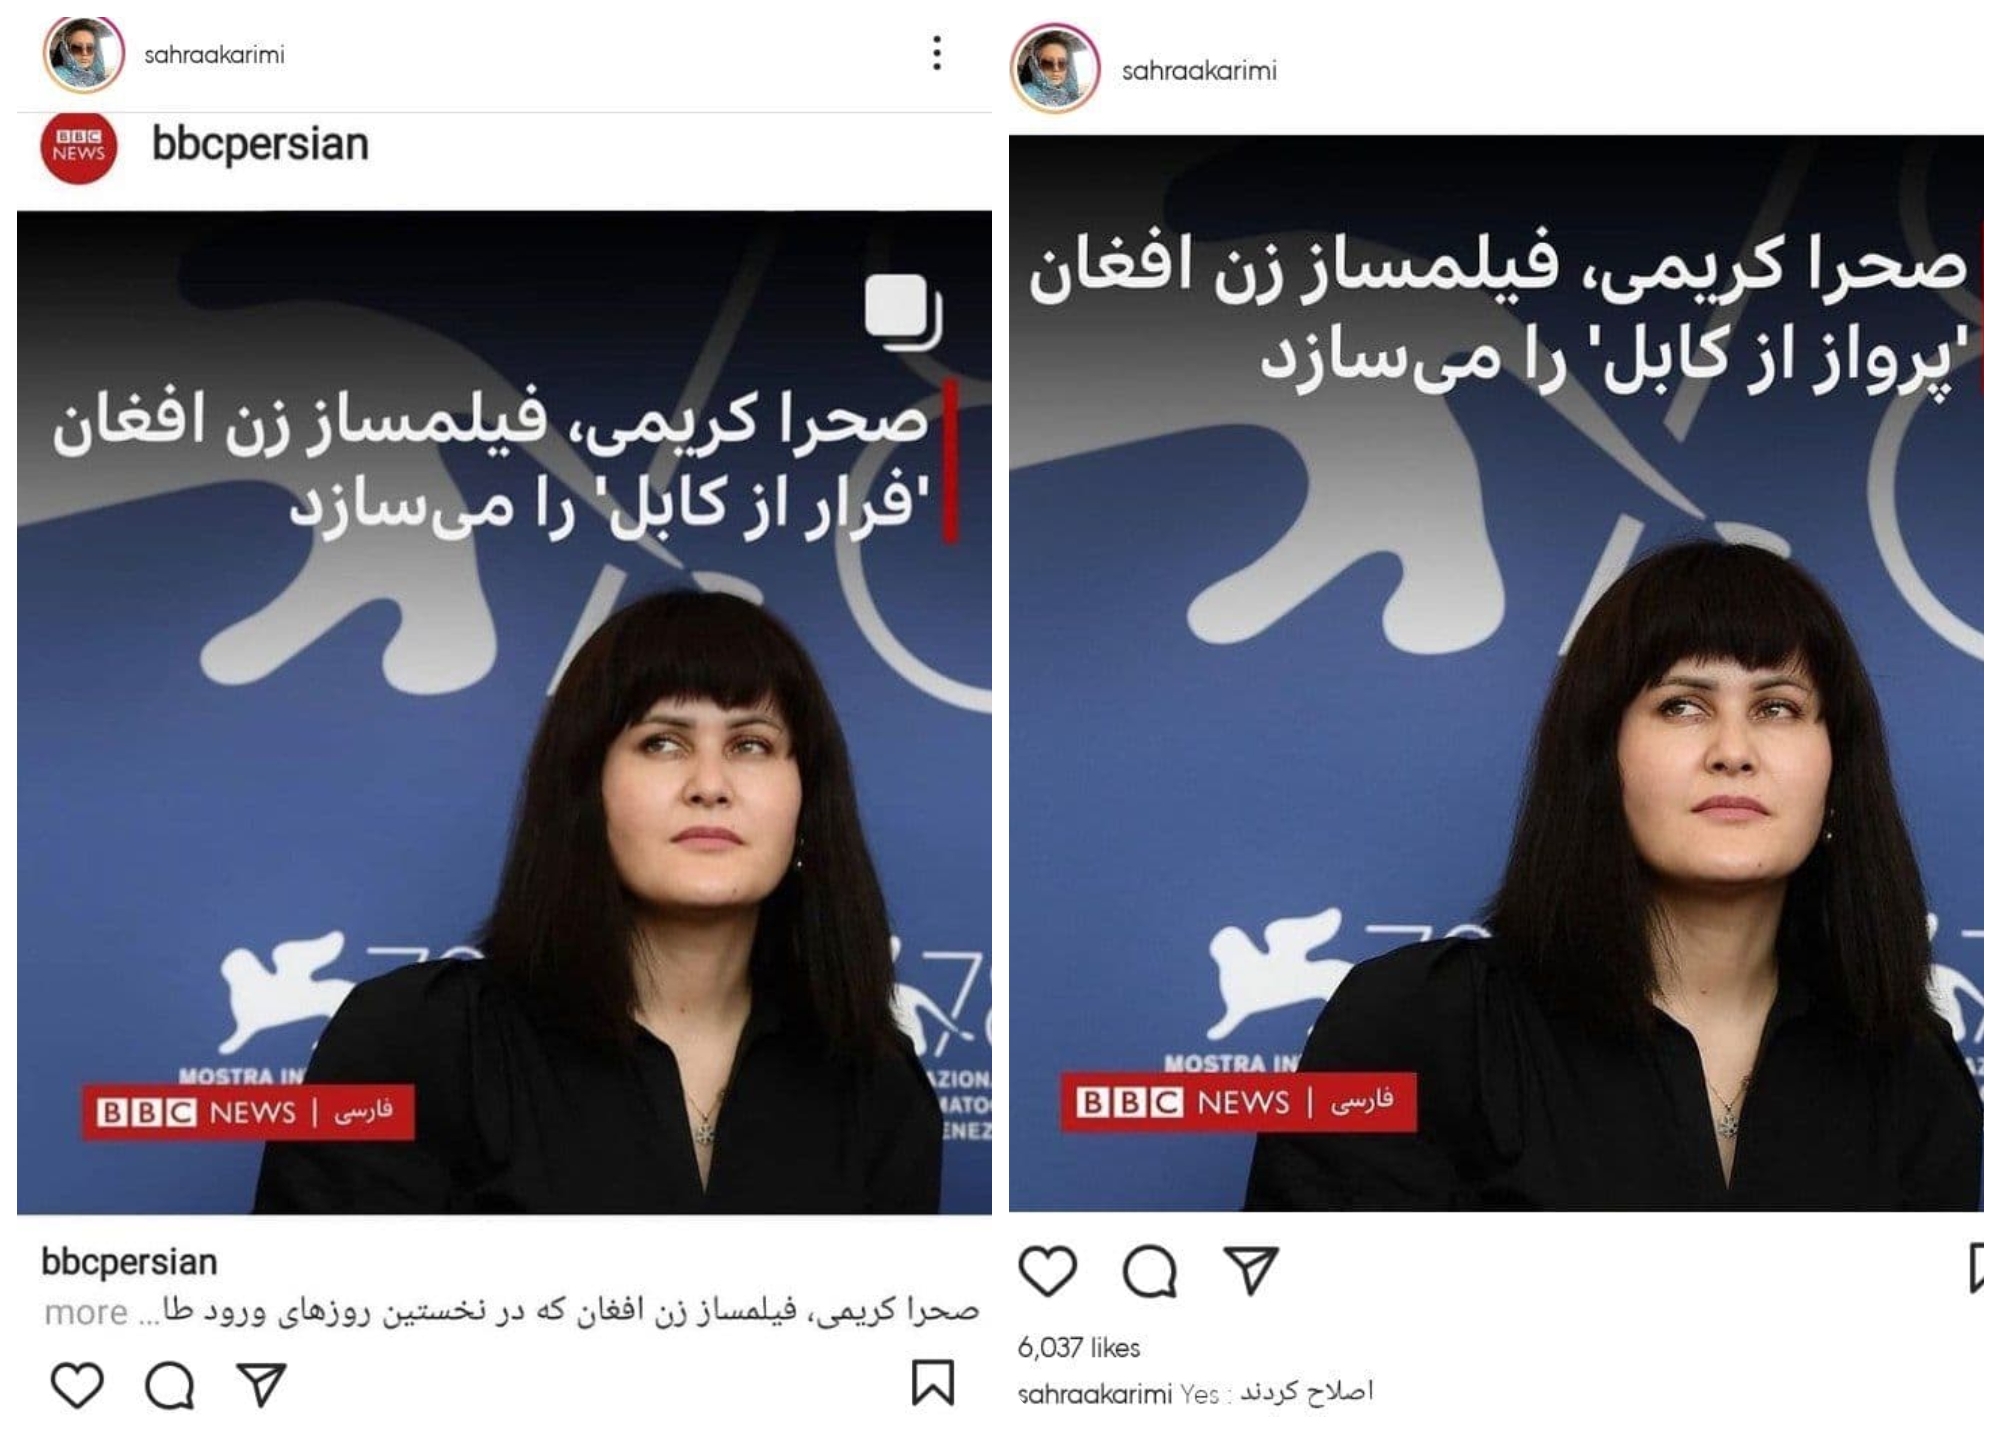 واکنش صحرا کریمی به شیطنت بی بی سی فارسی با نام فیلمش